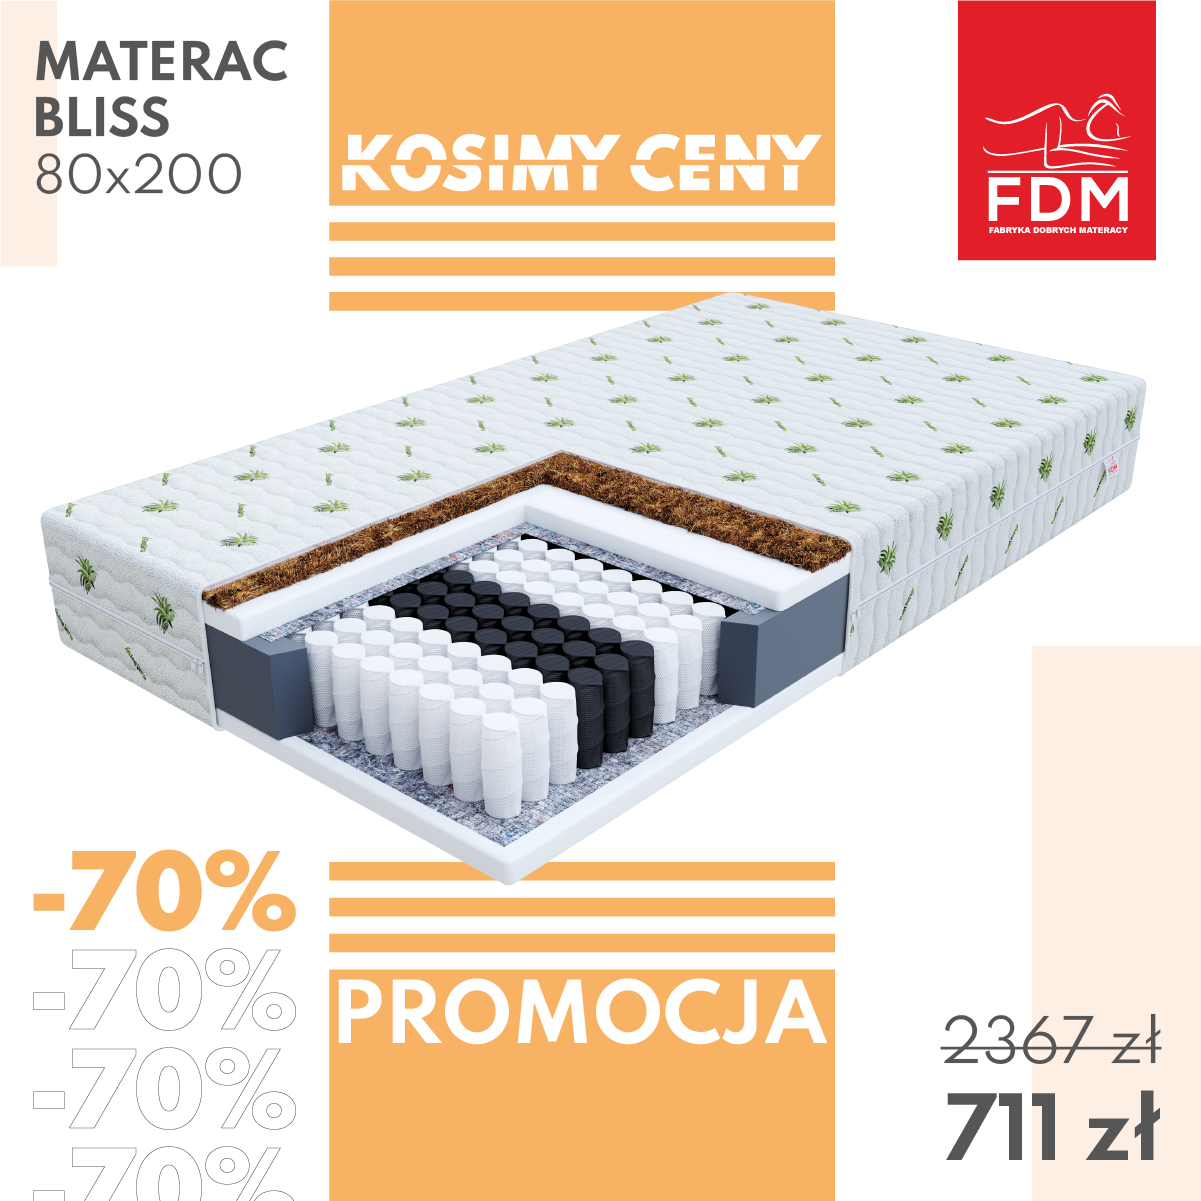 Promocja KOSIMY CENY - materac BLISS